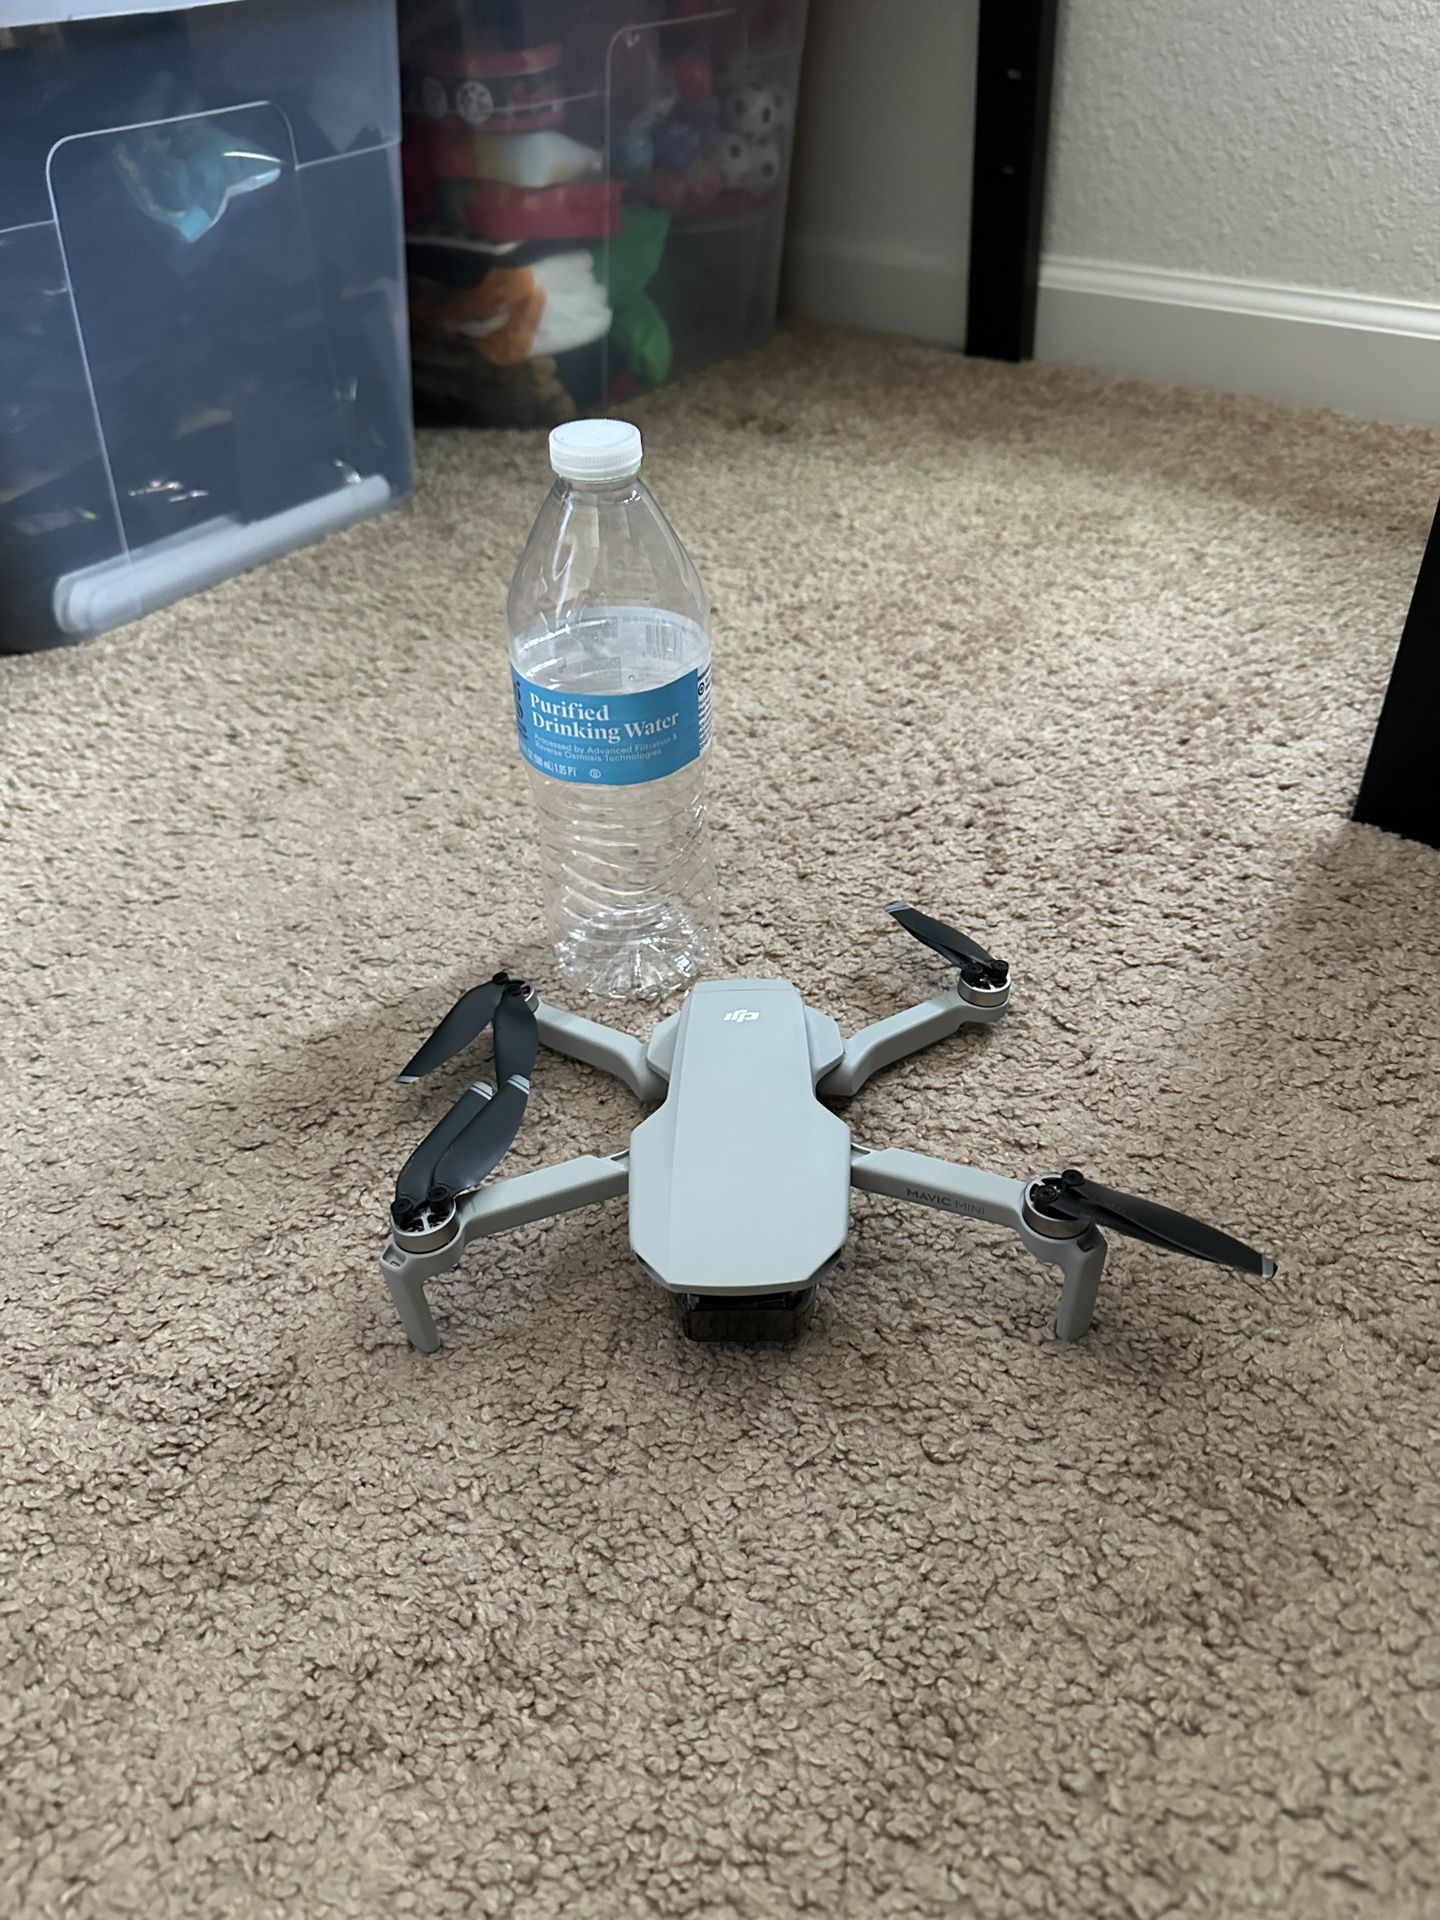 DJI Mini Drone 